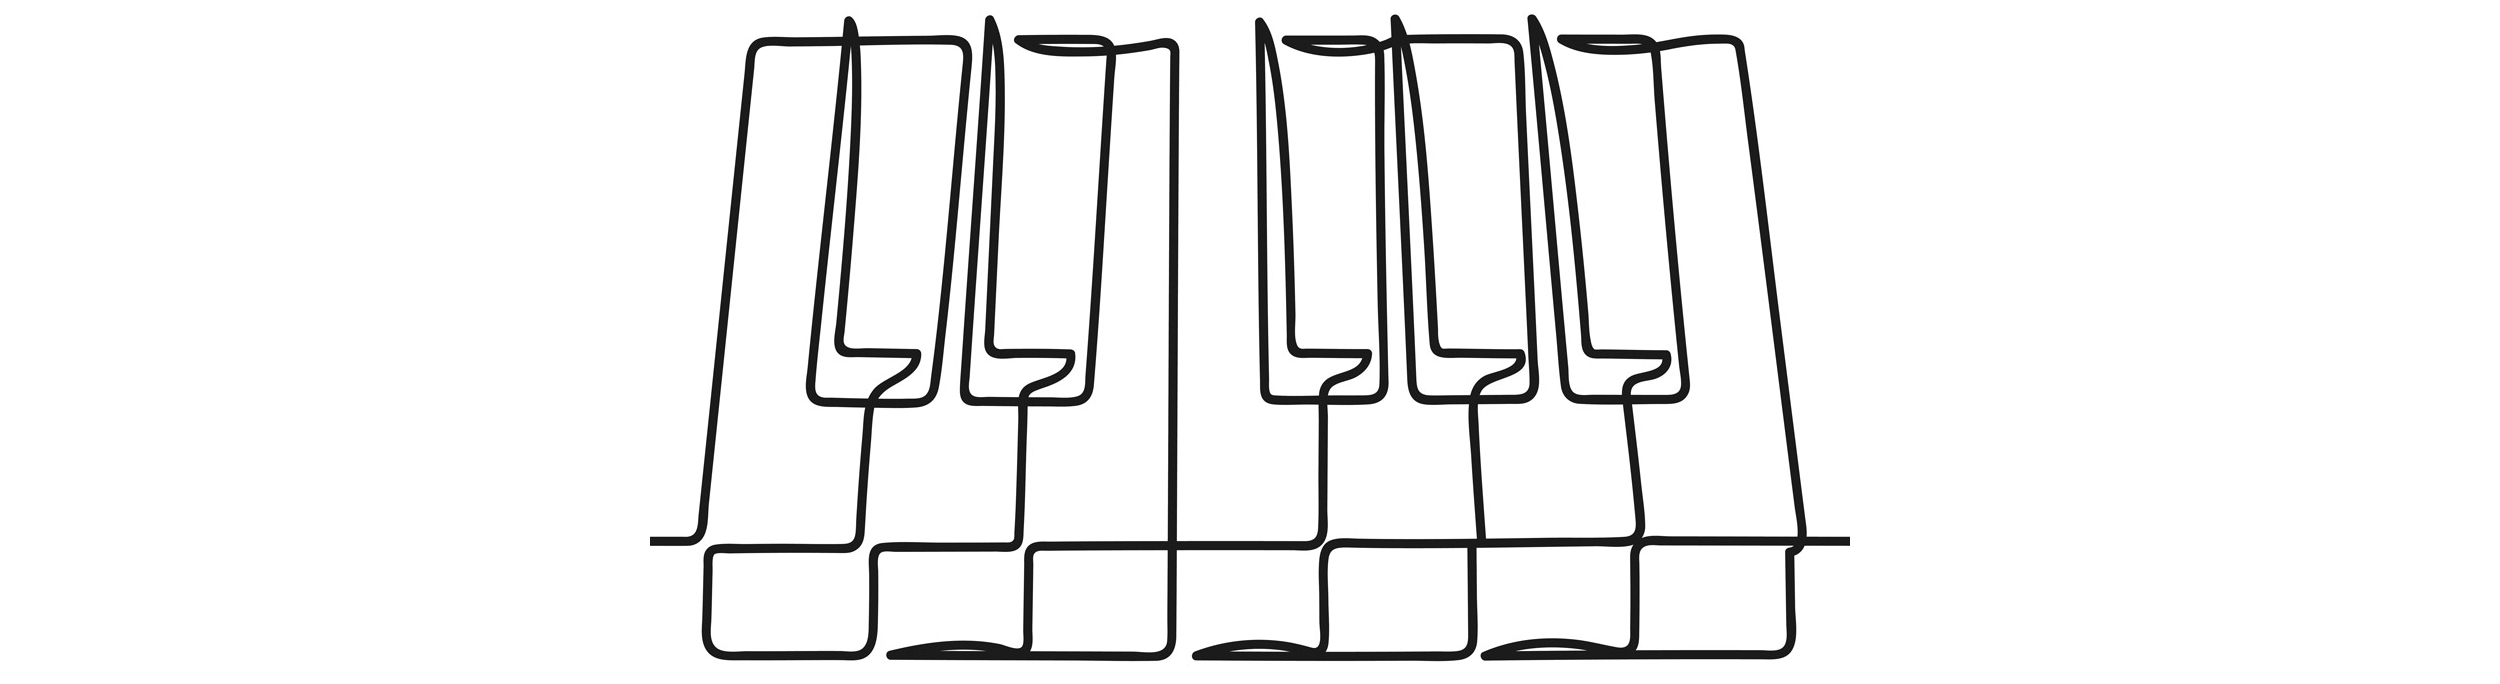 Sketch of piano keys.